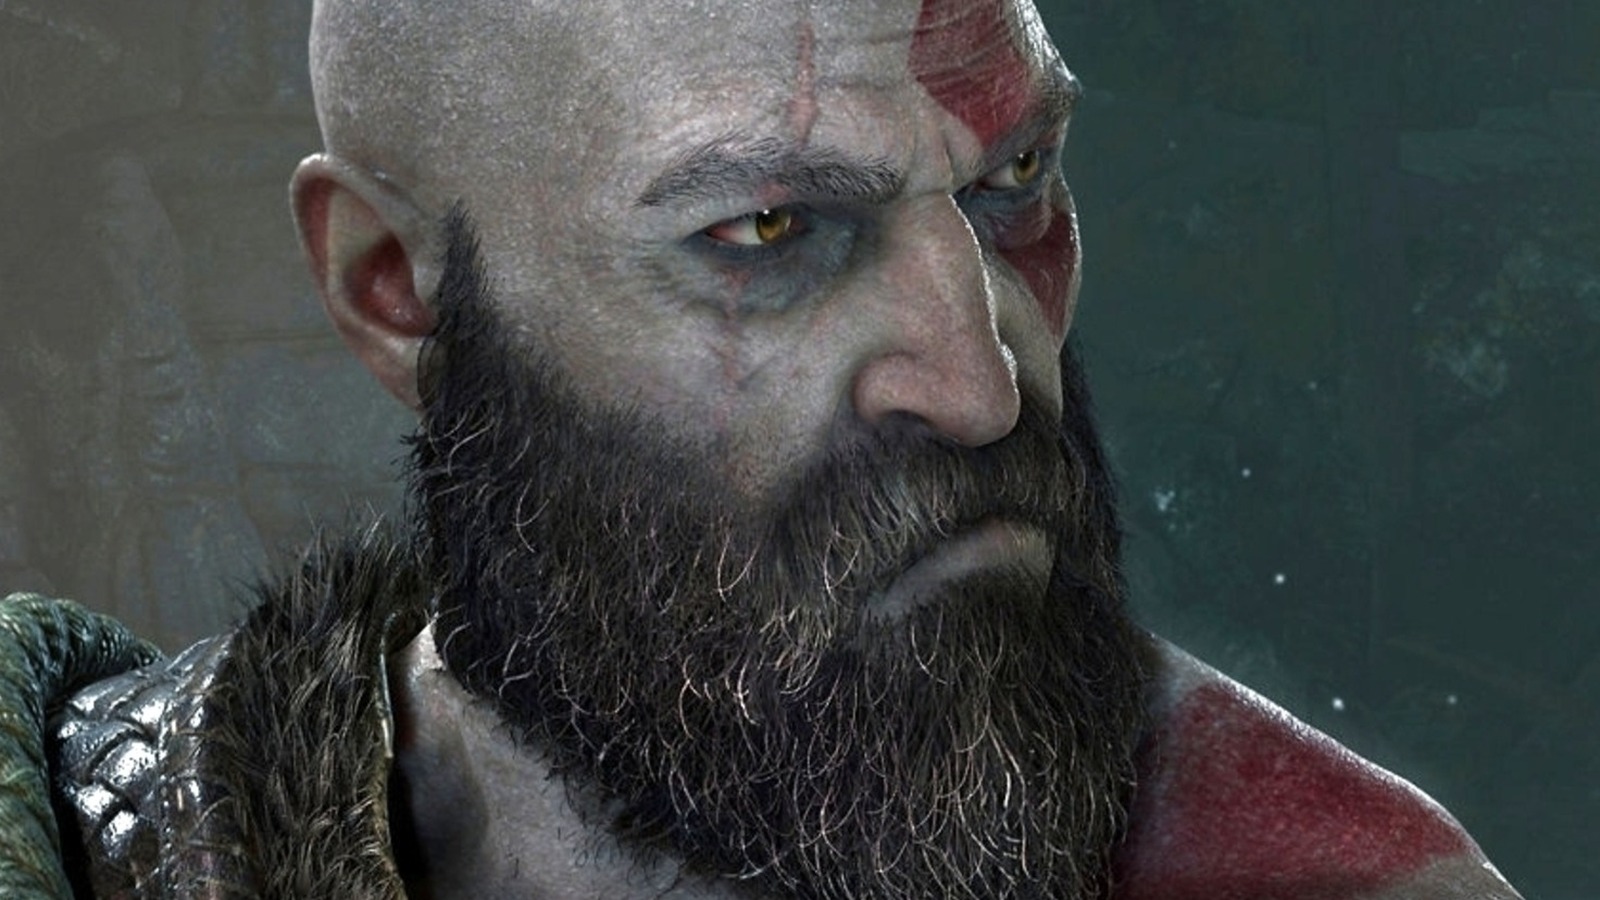 Battle of Ragnarok - Kratos Army vs Odin Fight Scene FULL BATTLE